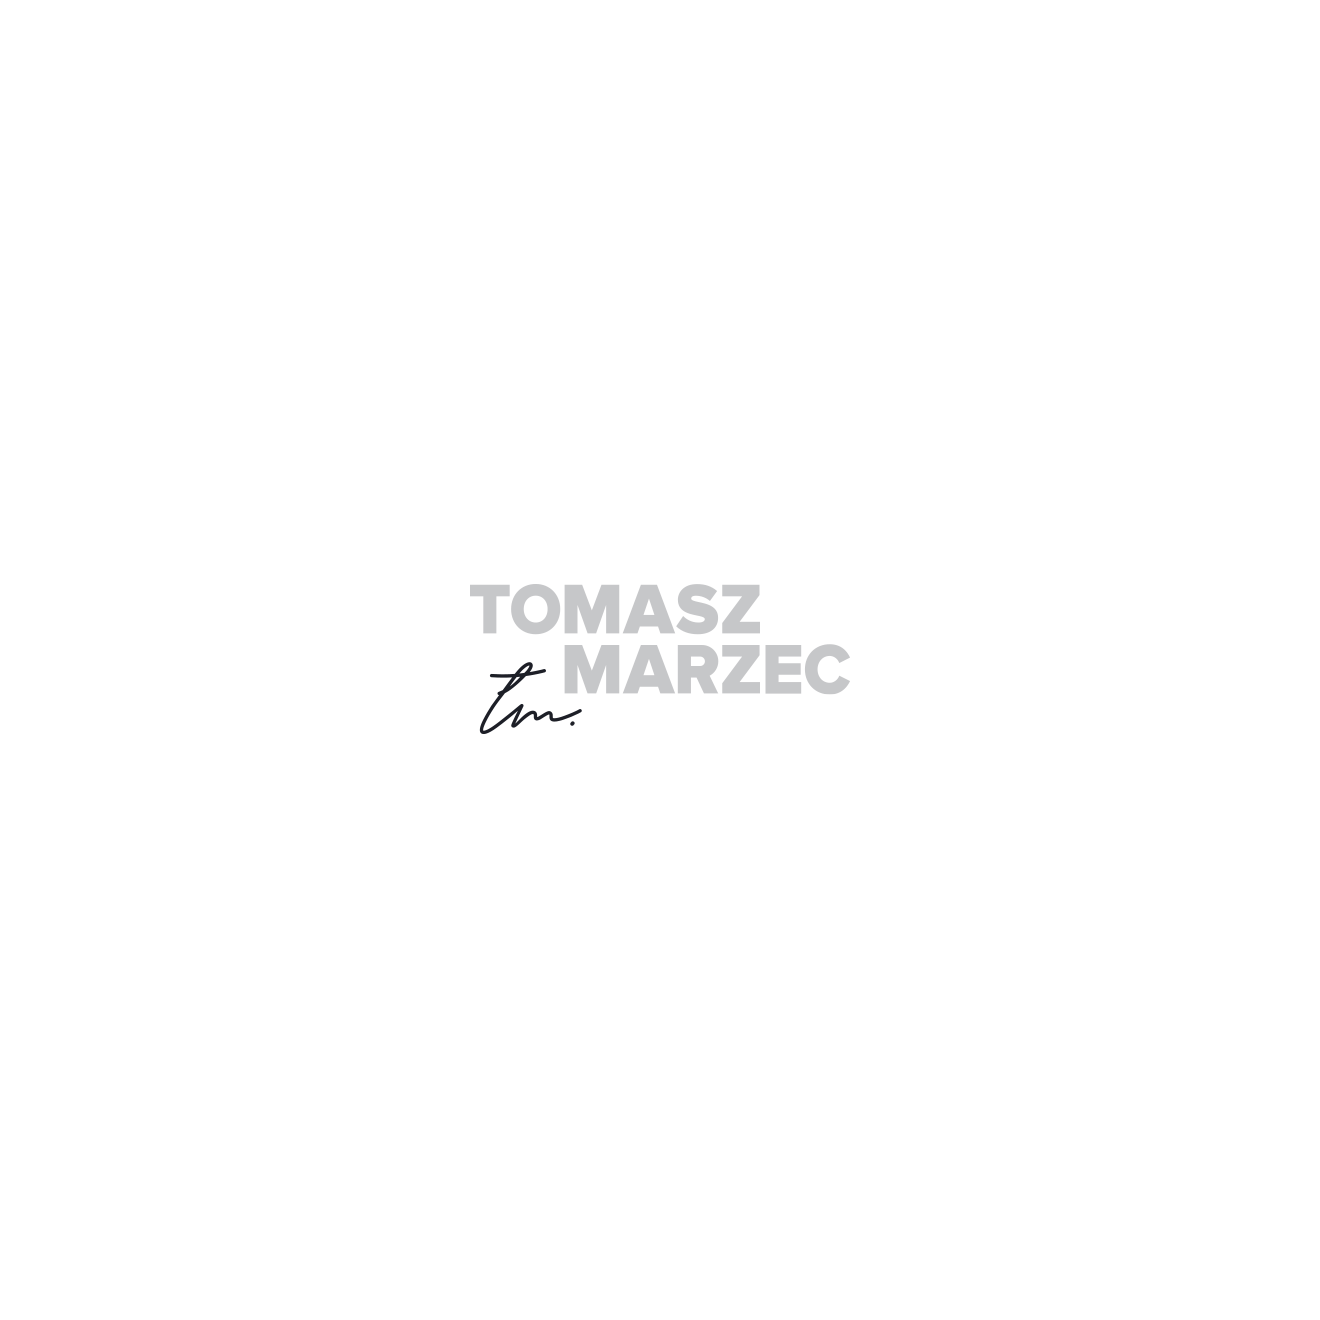 Tomasz Marzec - Budowa Logo, Sygnatura